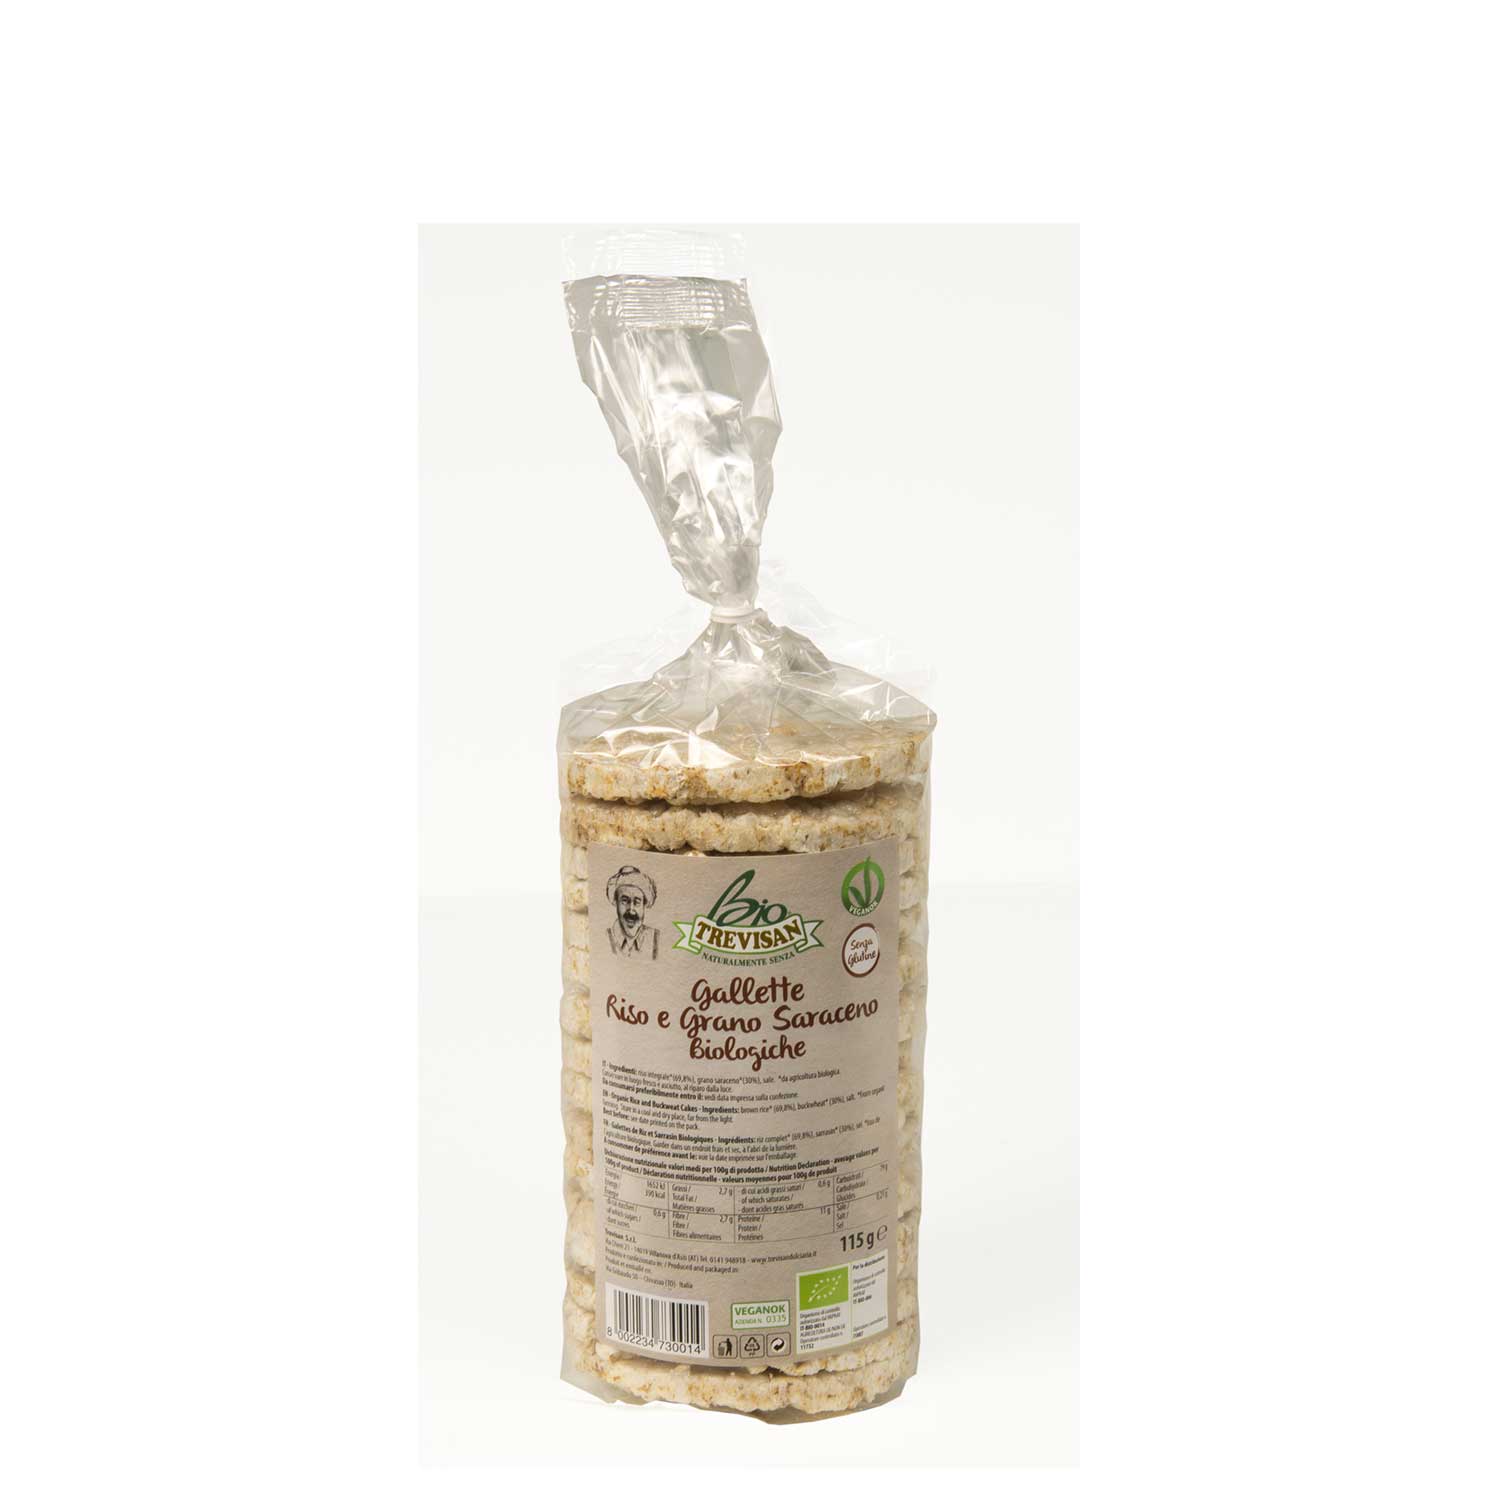 Gallette di riso e grano saraceno s/g BIO - Trevisan Shop